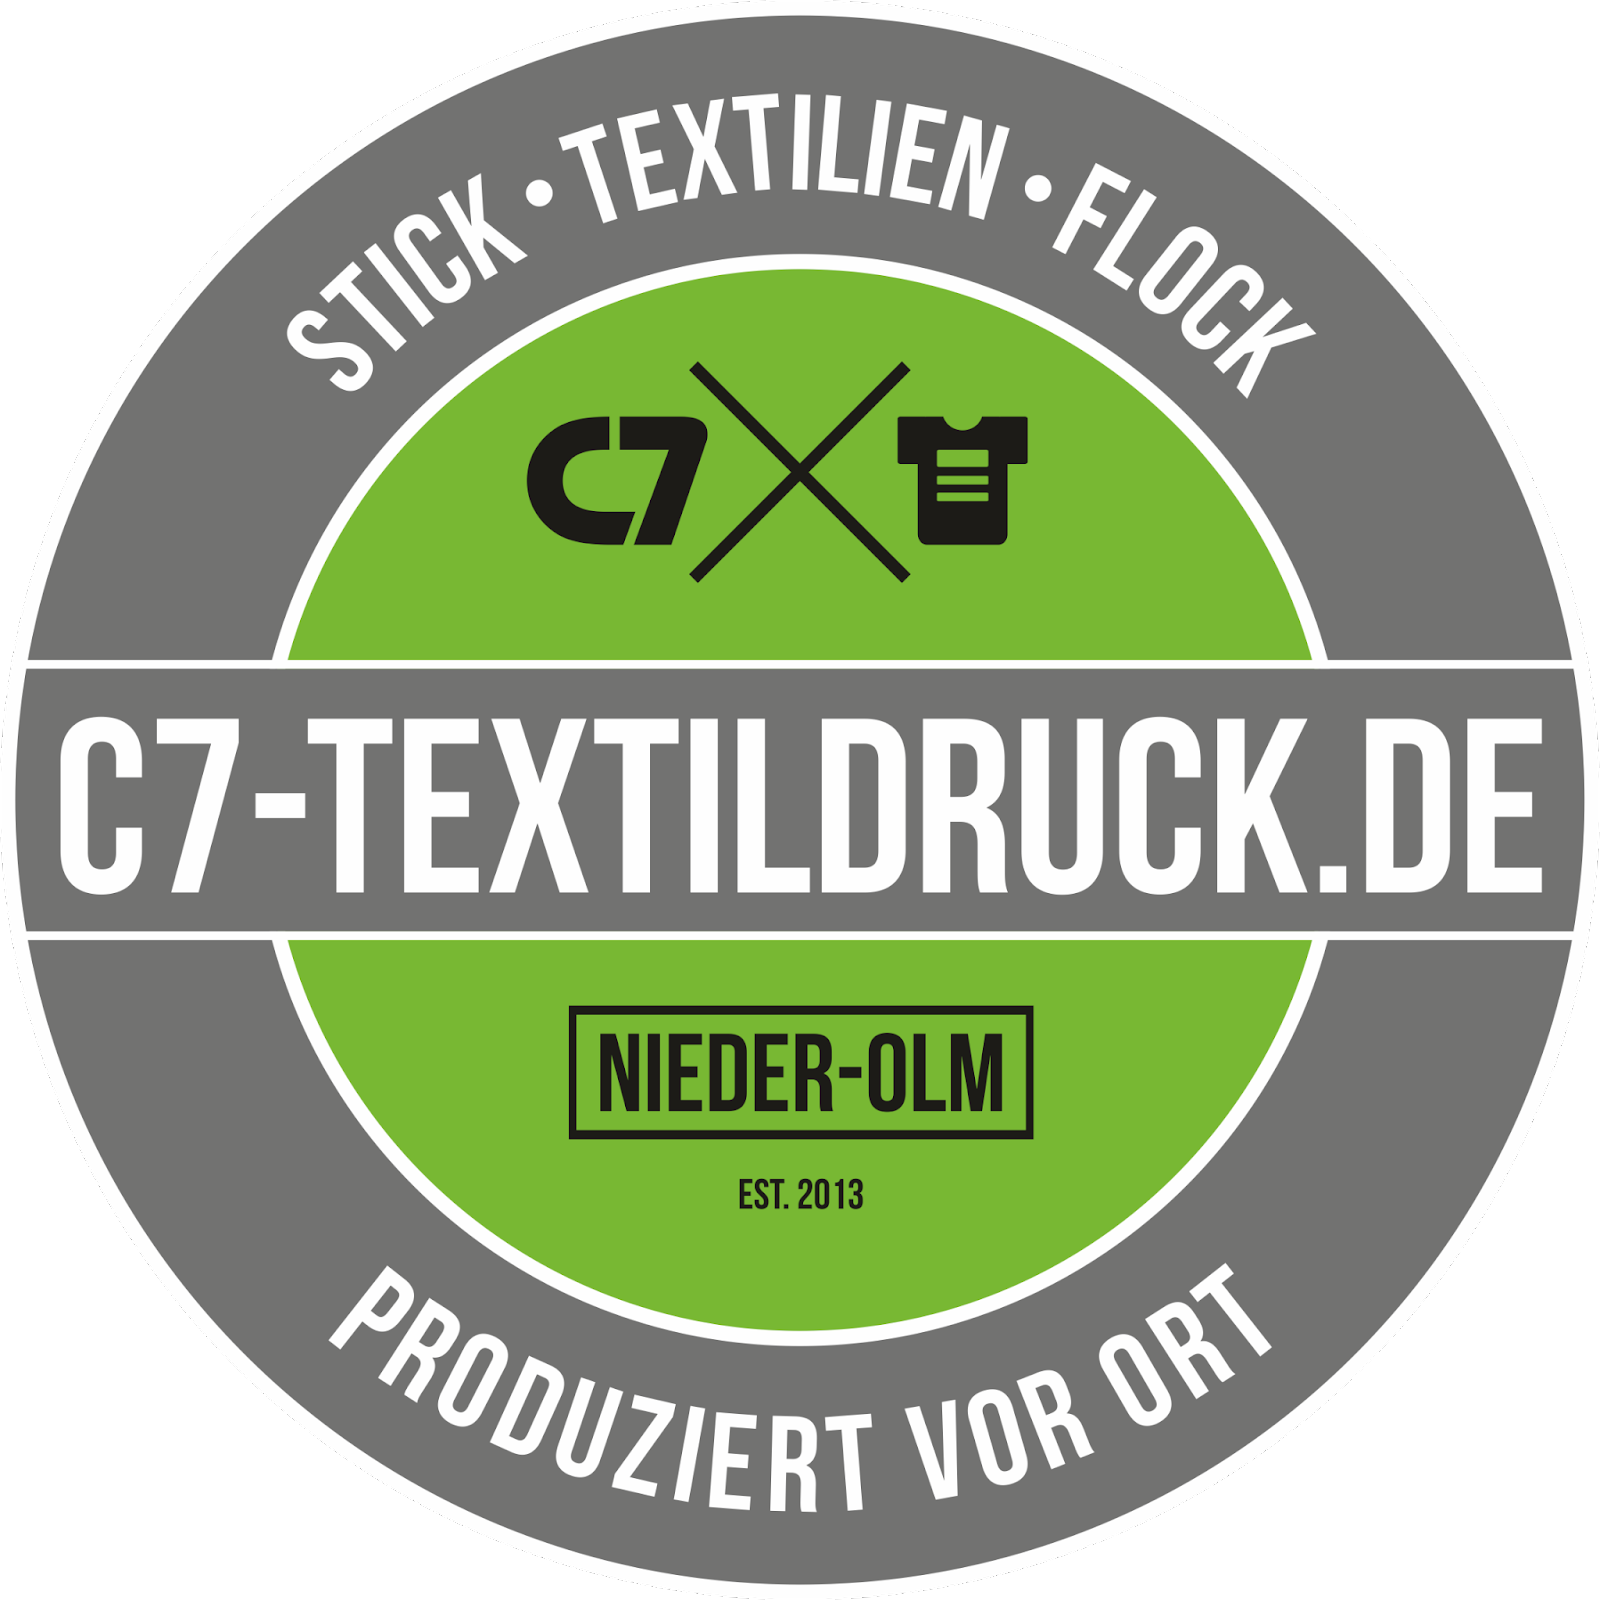 Link zu C7 Textildruck